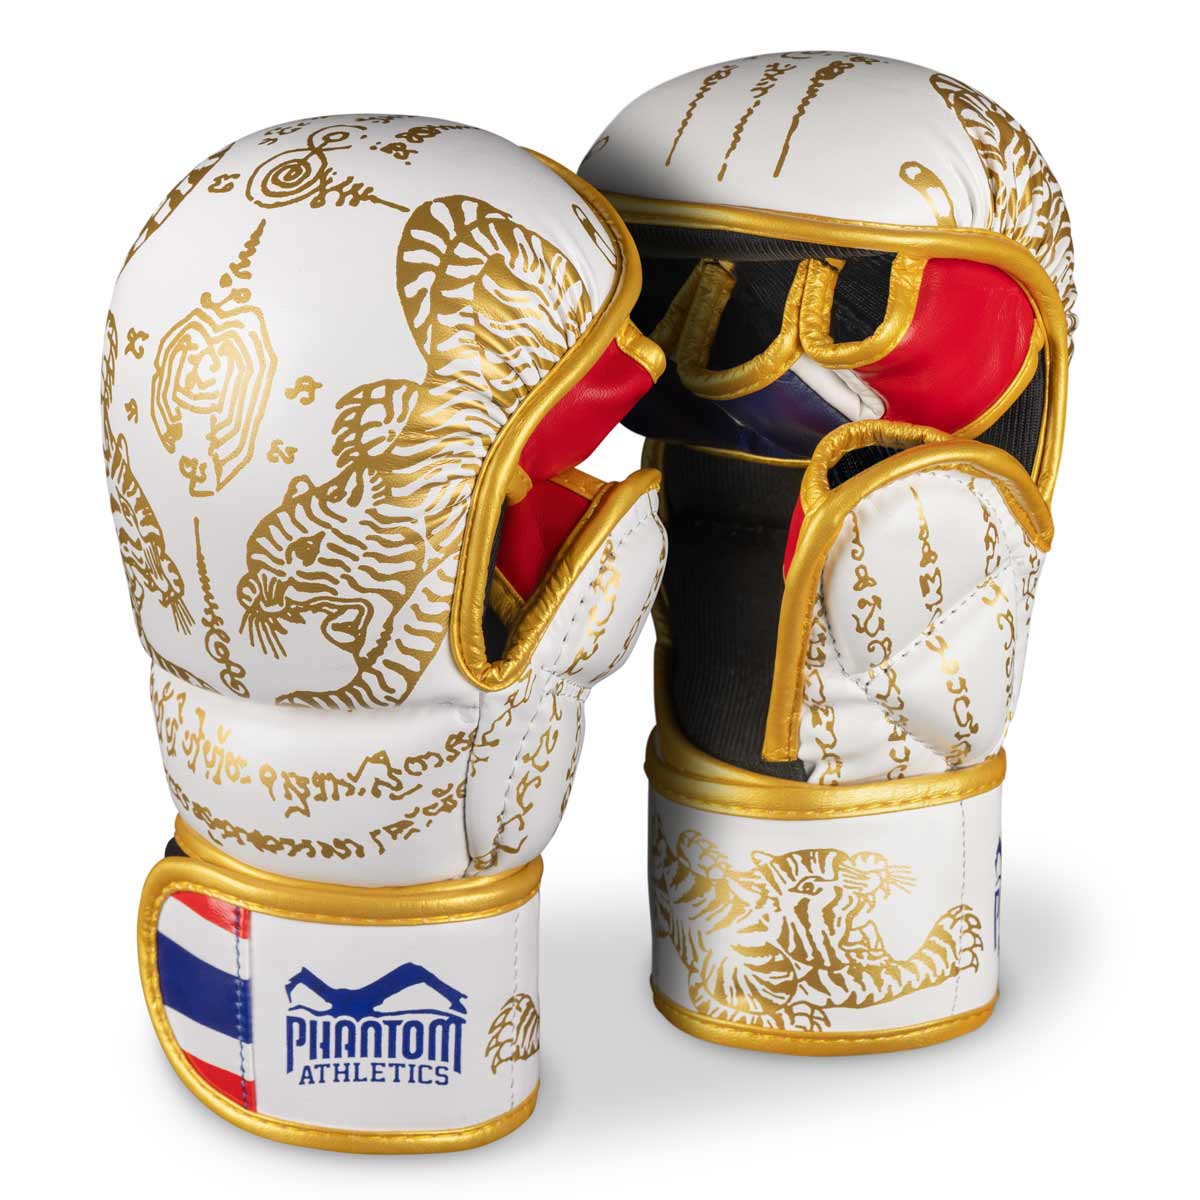 Phantom Muay Thai rukavice za tajlandski boks i MMA sparinge, natjecanja i treninge. U tradicionalnom Sak Yant dizajnu i bijelo/zlatnoj boji.